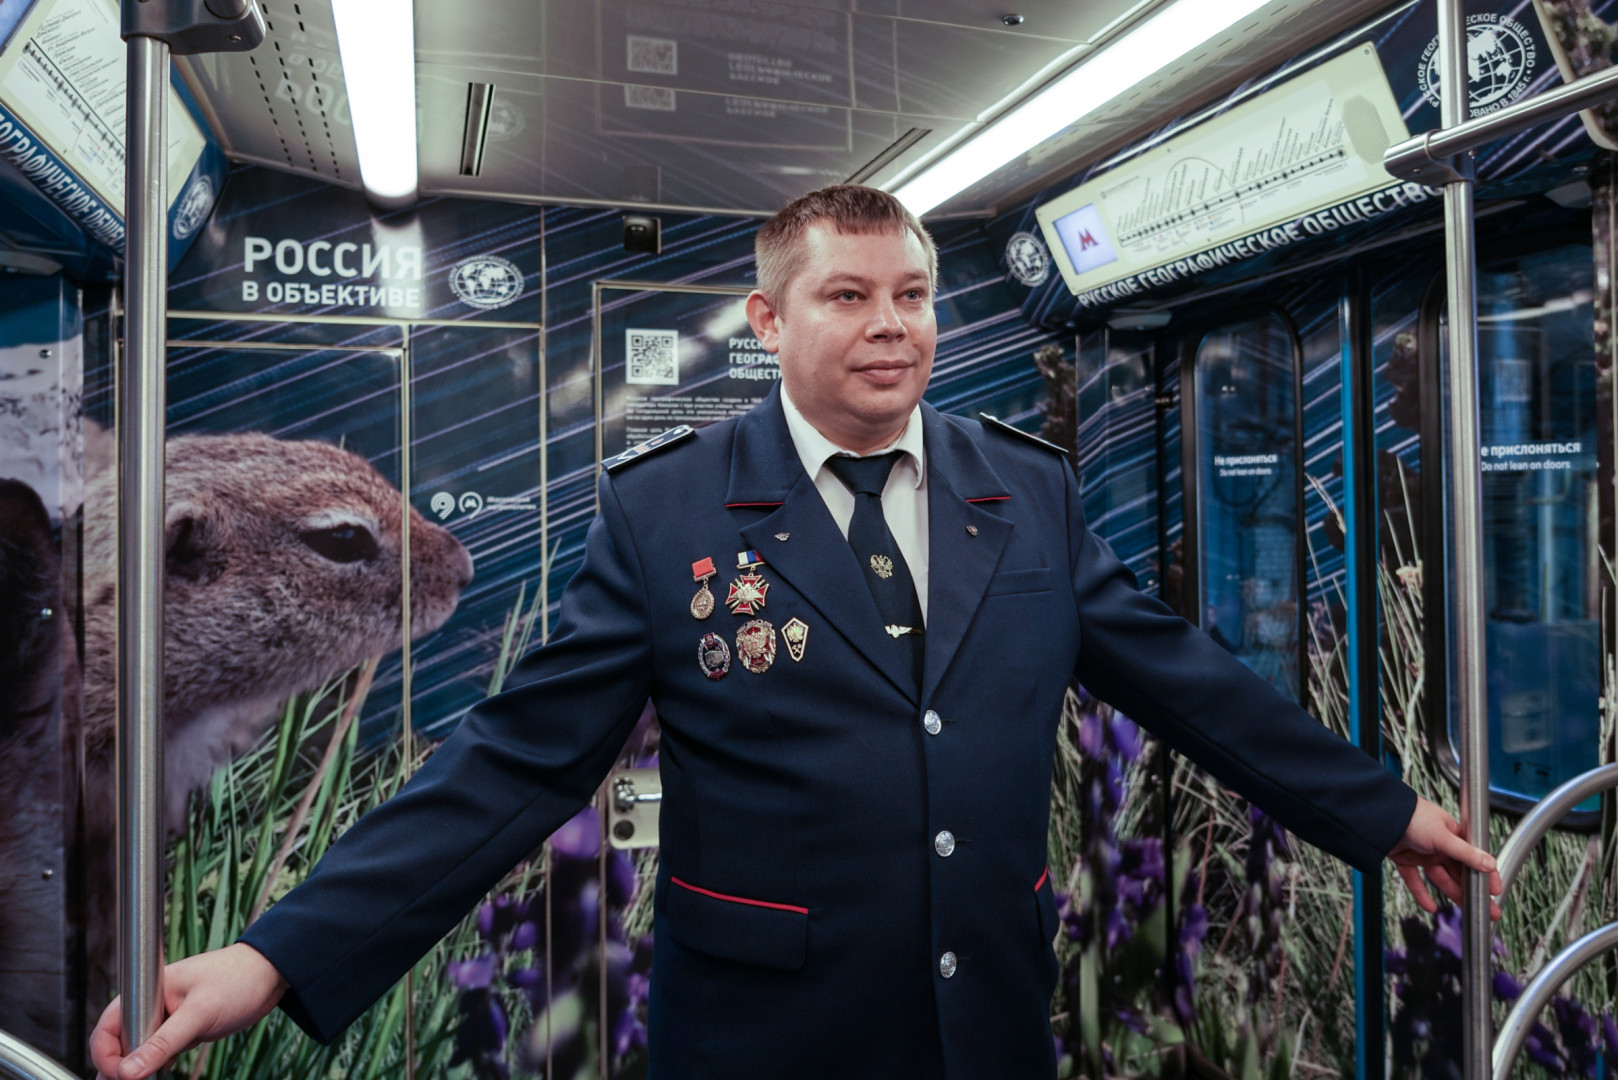 Тематический поезд РГО "Россия в объективе"